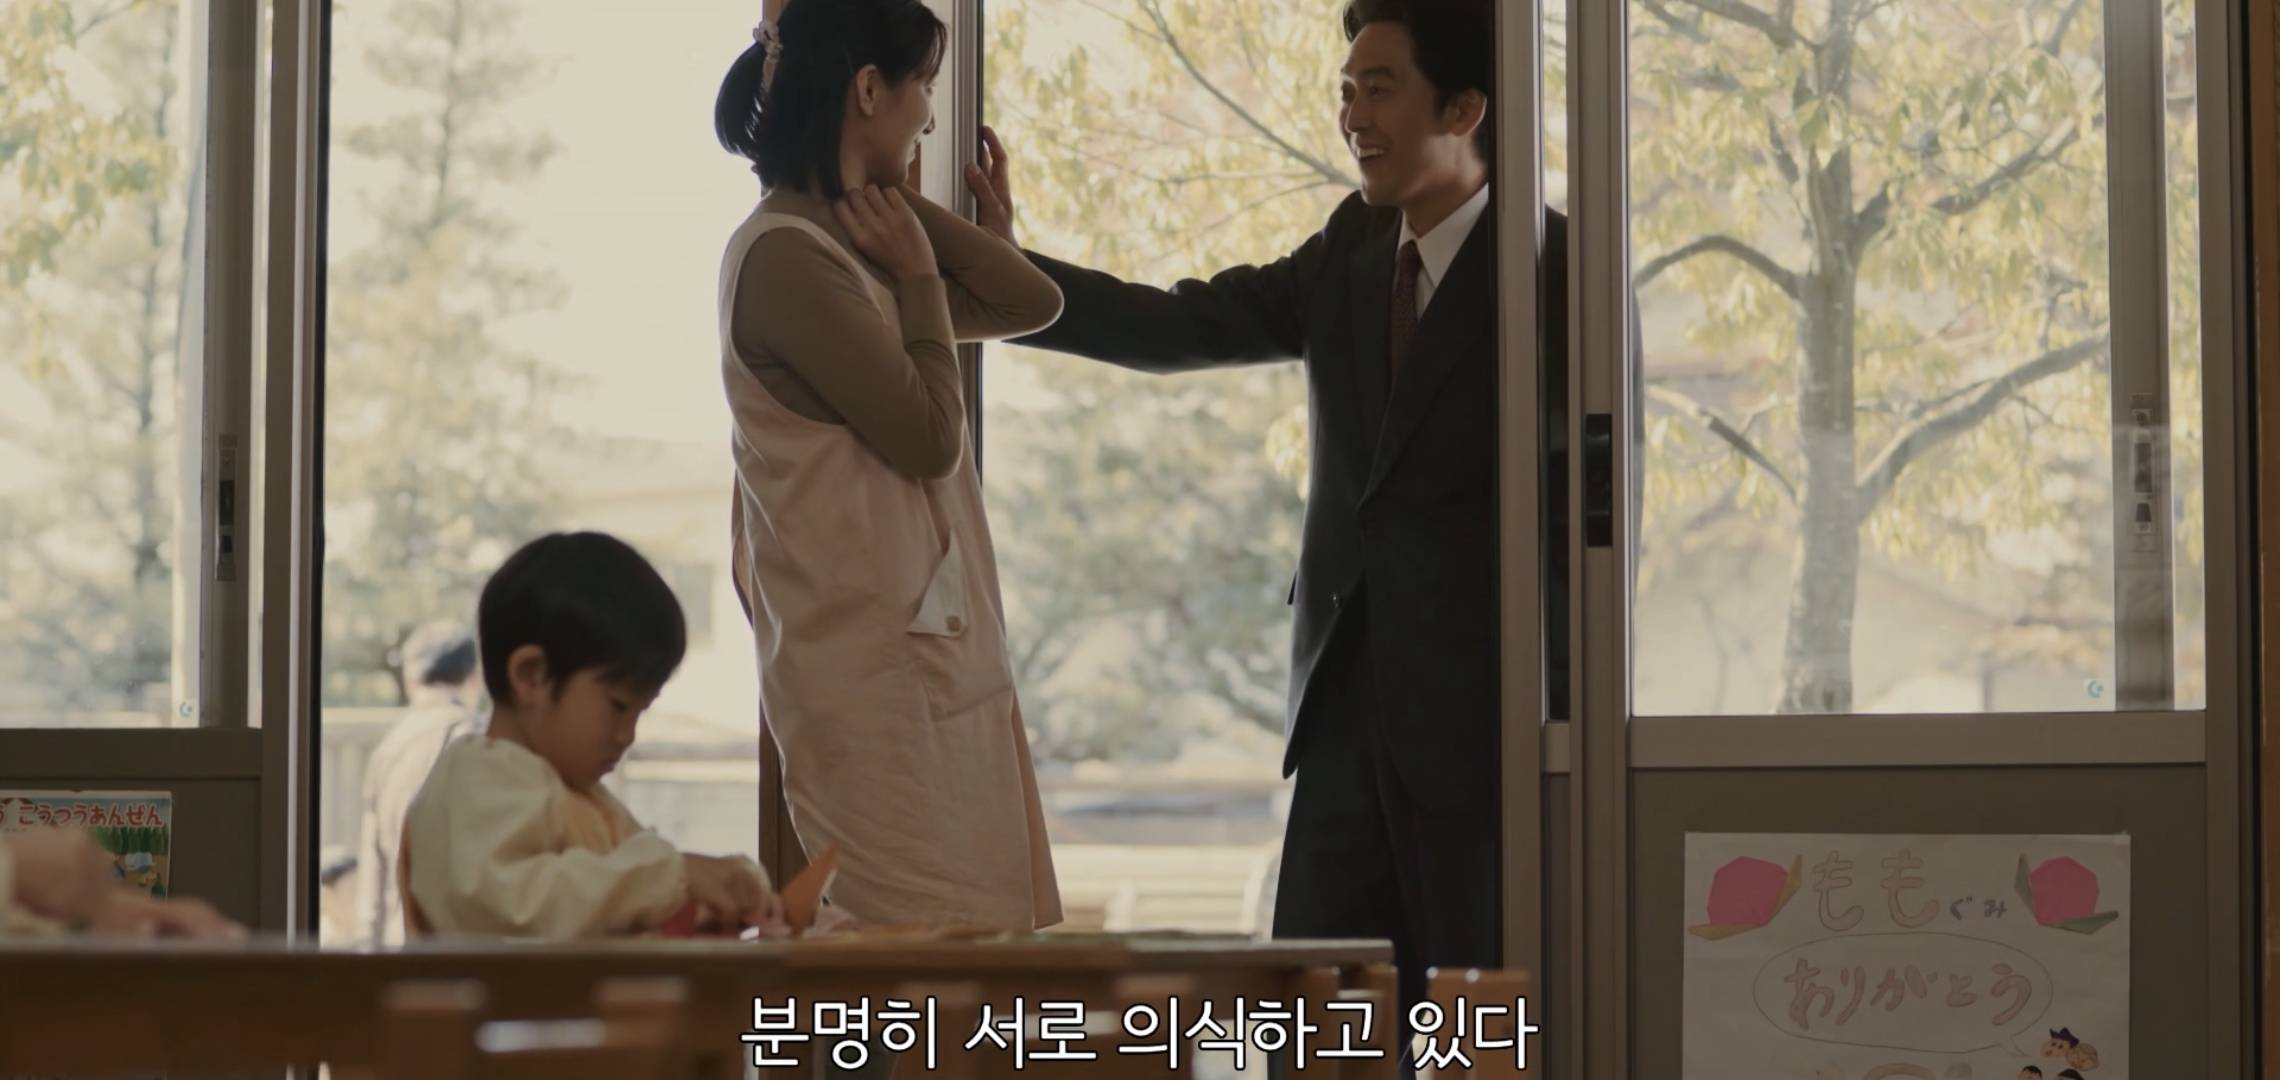 한국에서 제발 리메이크해줬으면 하는 짱잼 일본드라마 내용.jpg | 인스티즈